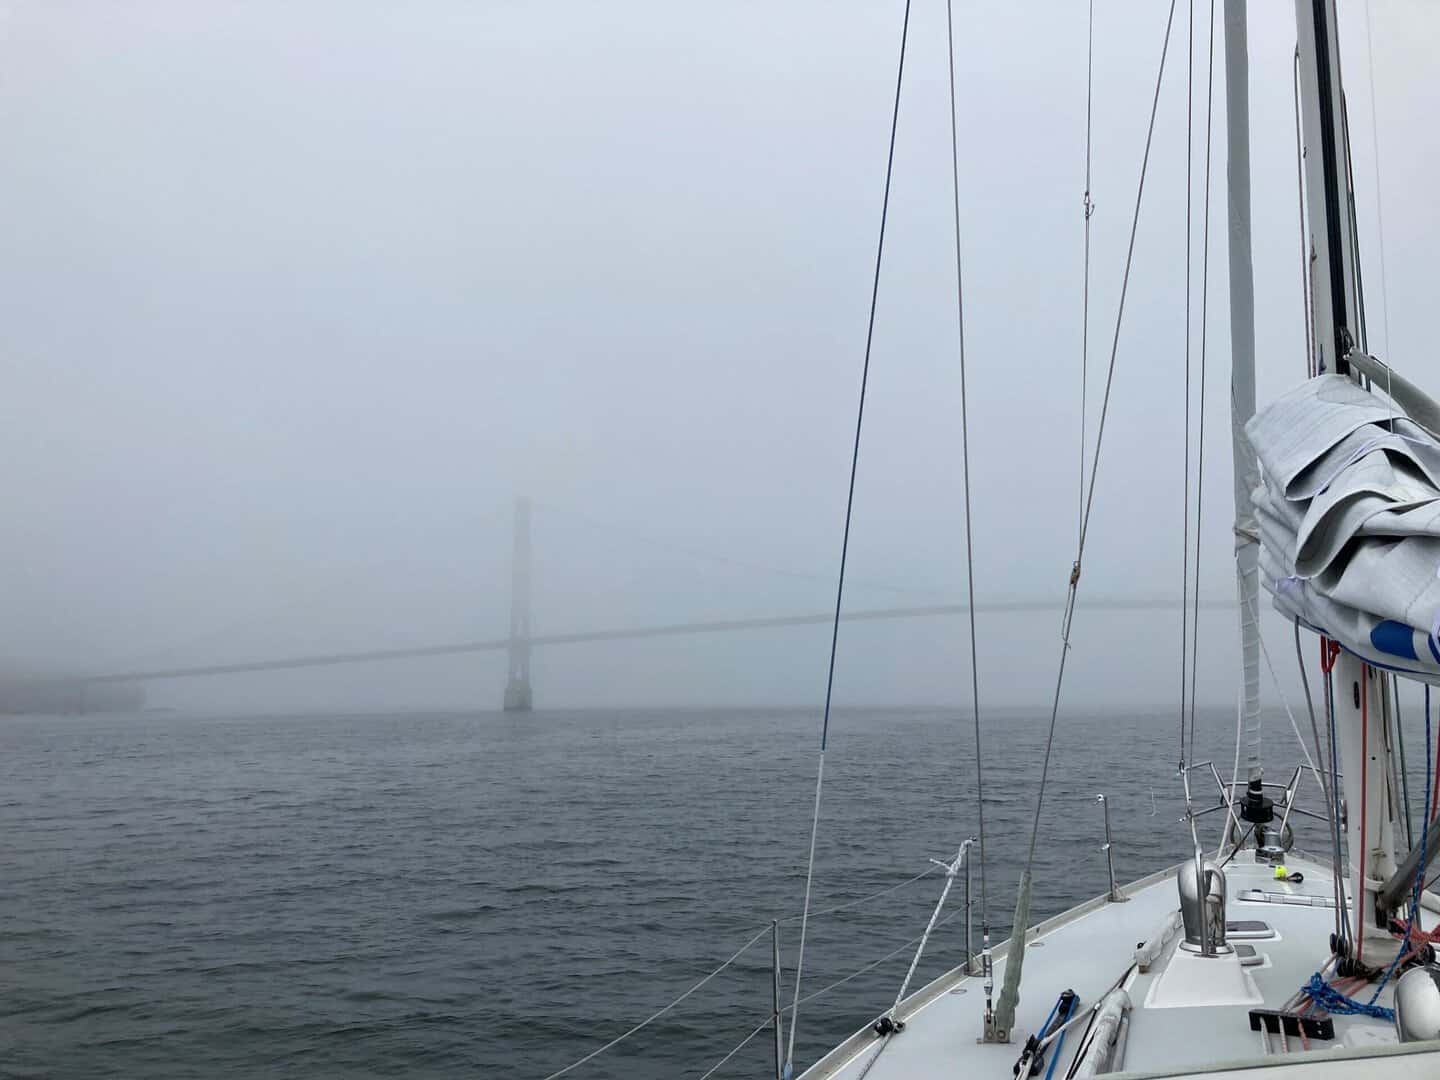 approaching Deer Isle bridge in fog.